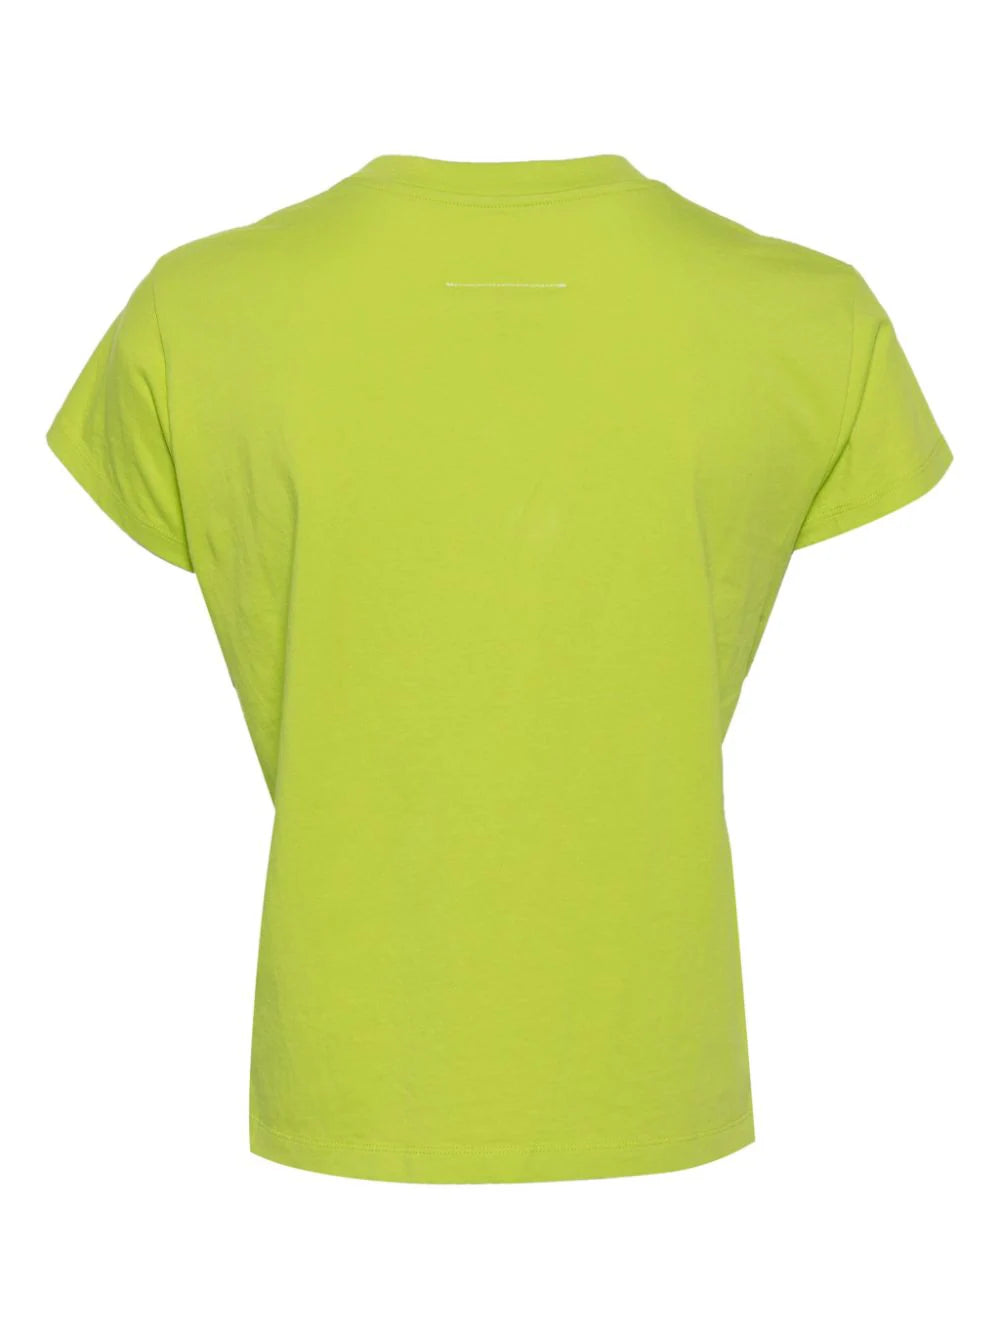 MM6 Women Cropped Neon Green T-Shirt